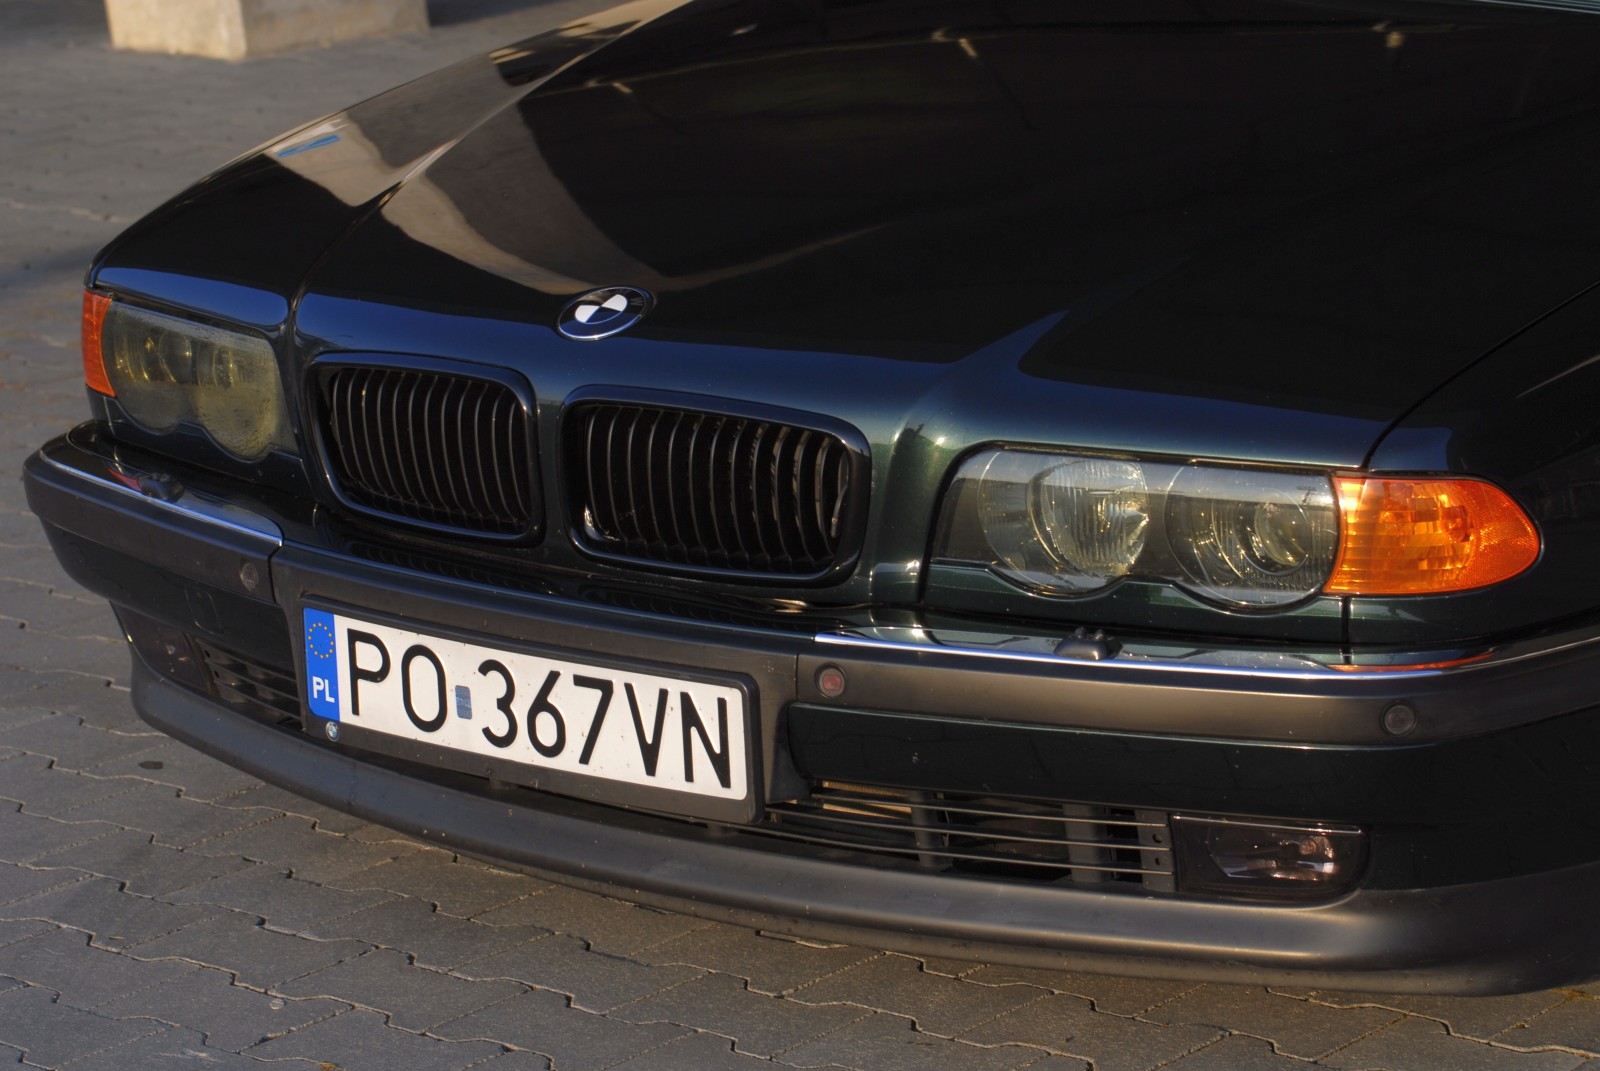 BMW E38 730d A po samodzielnym tuningu Trends Magazines